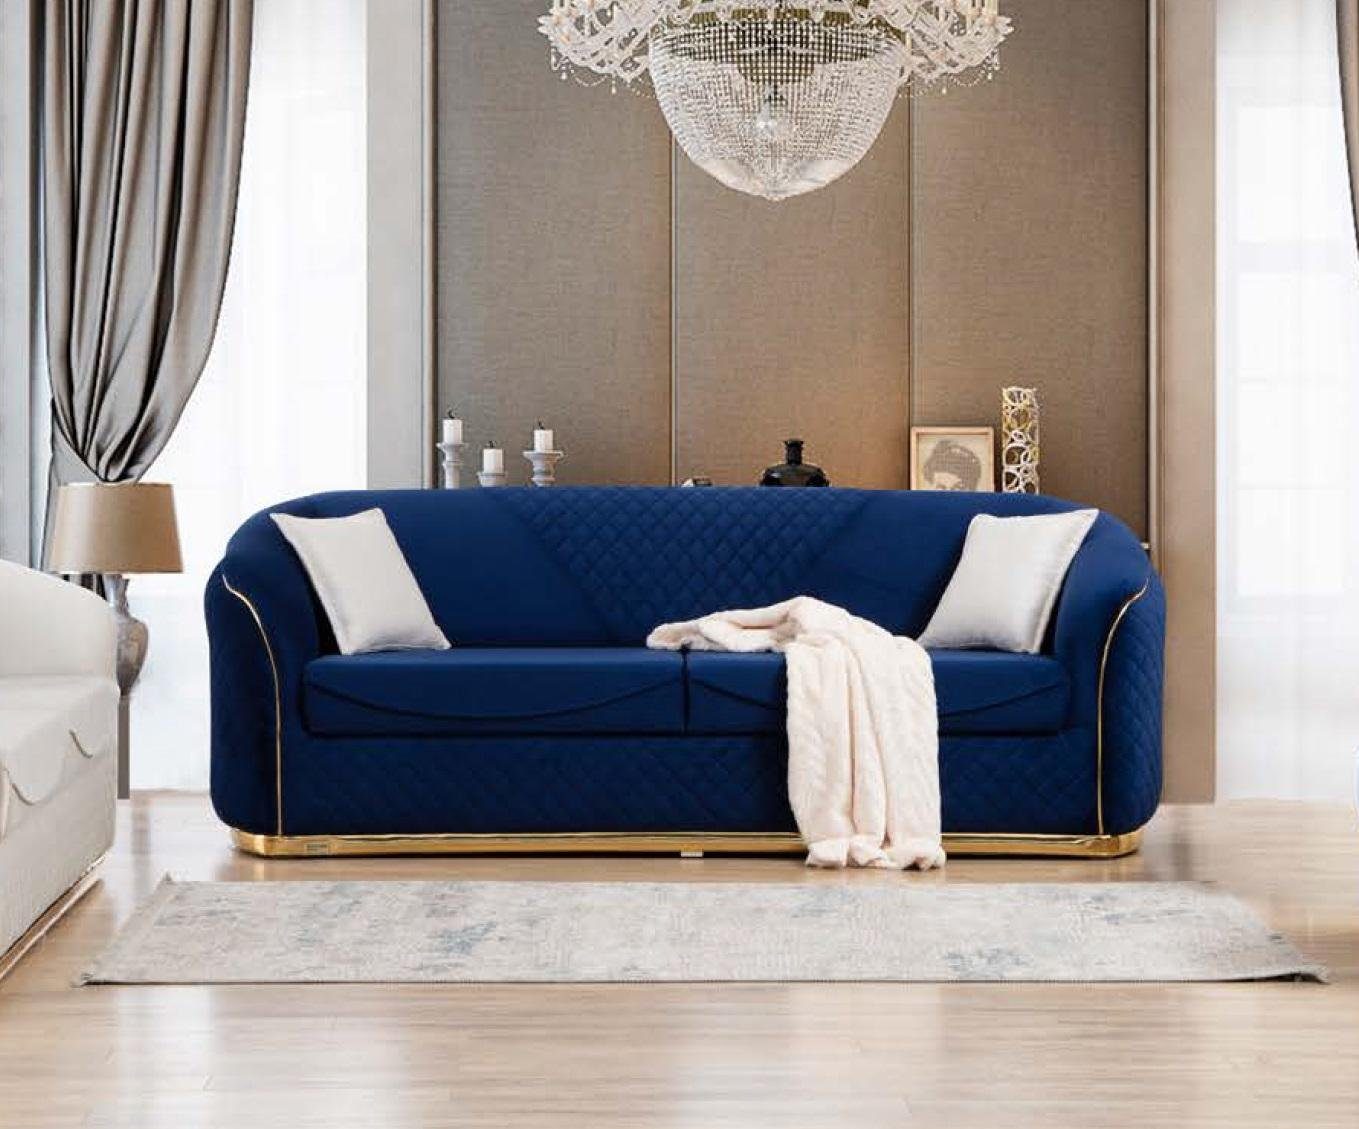 JVmoebel Sofa Dreisitzer Stoff Sofa Couch Polster Möbel Modern Design Luxus Neu, Made in Europe